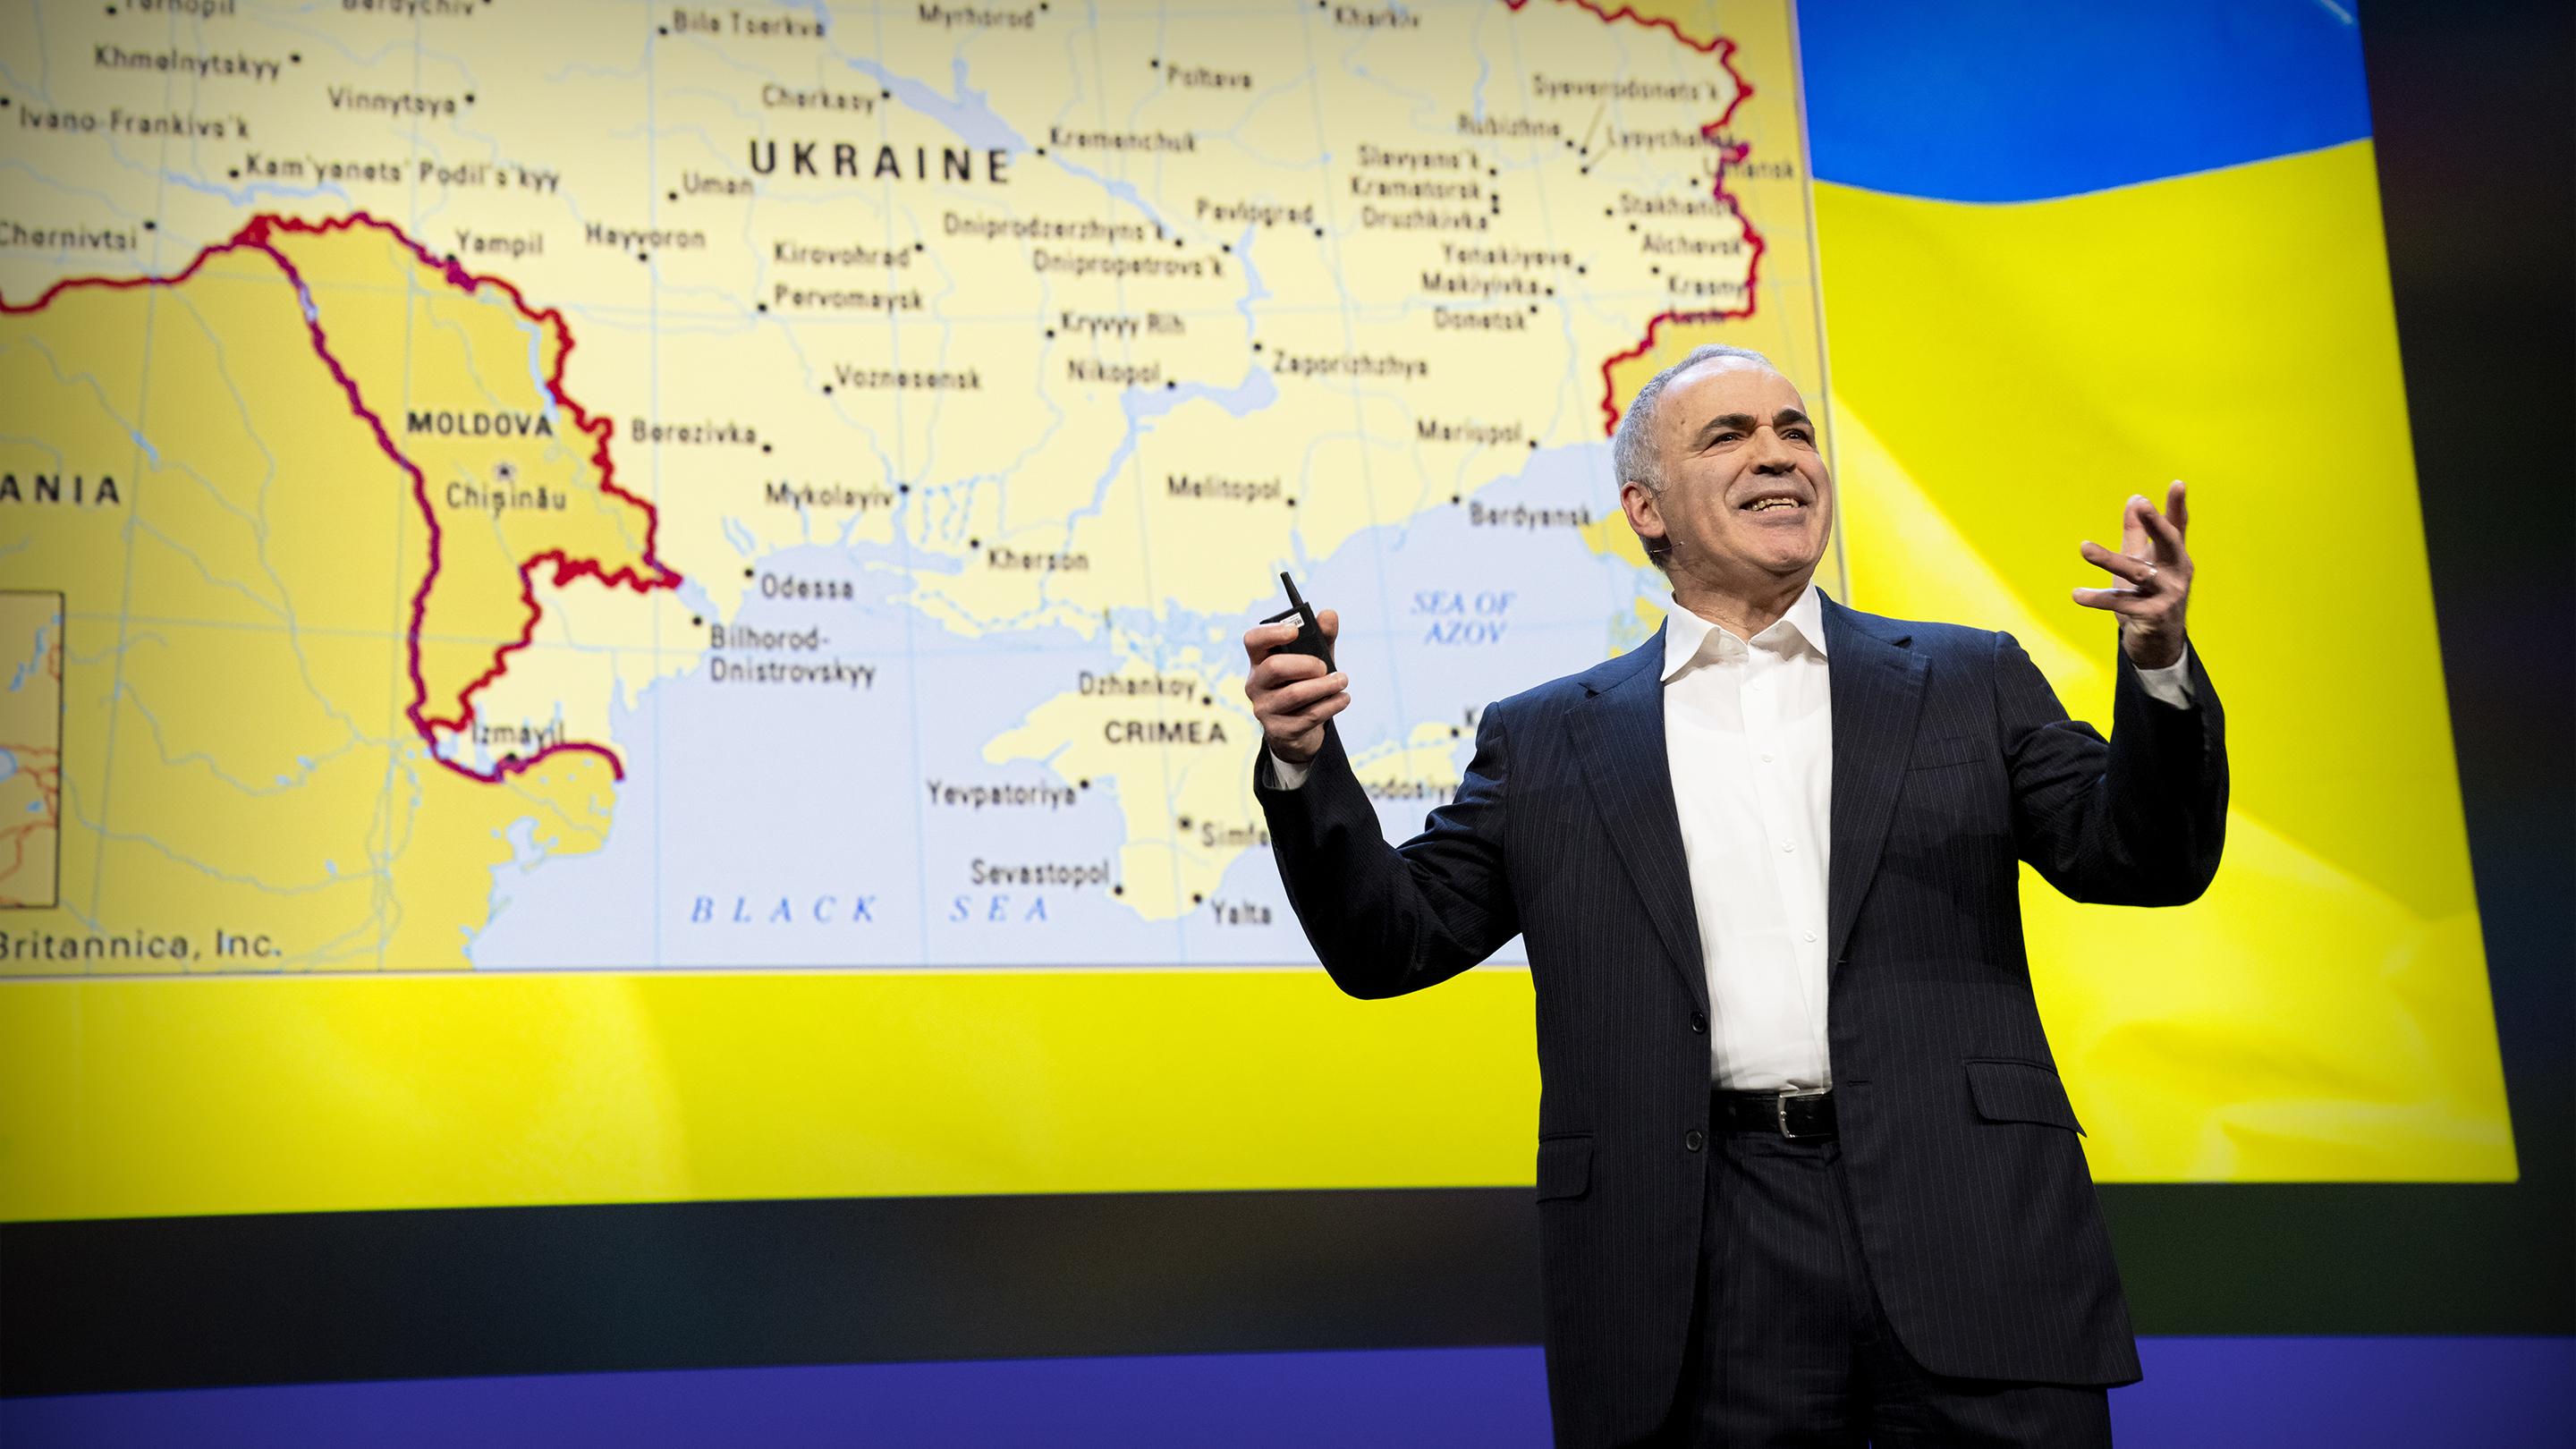 Fique com a Ucrânia na luta contra o mal | Garry Kasparov